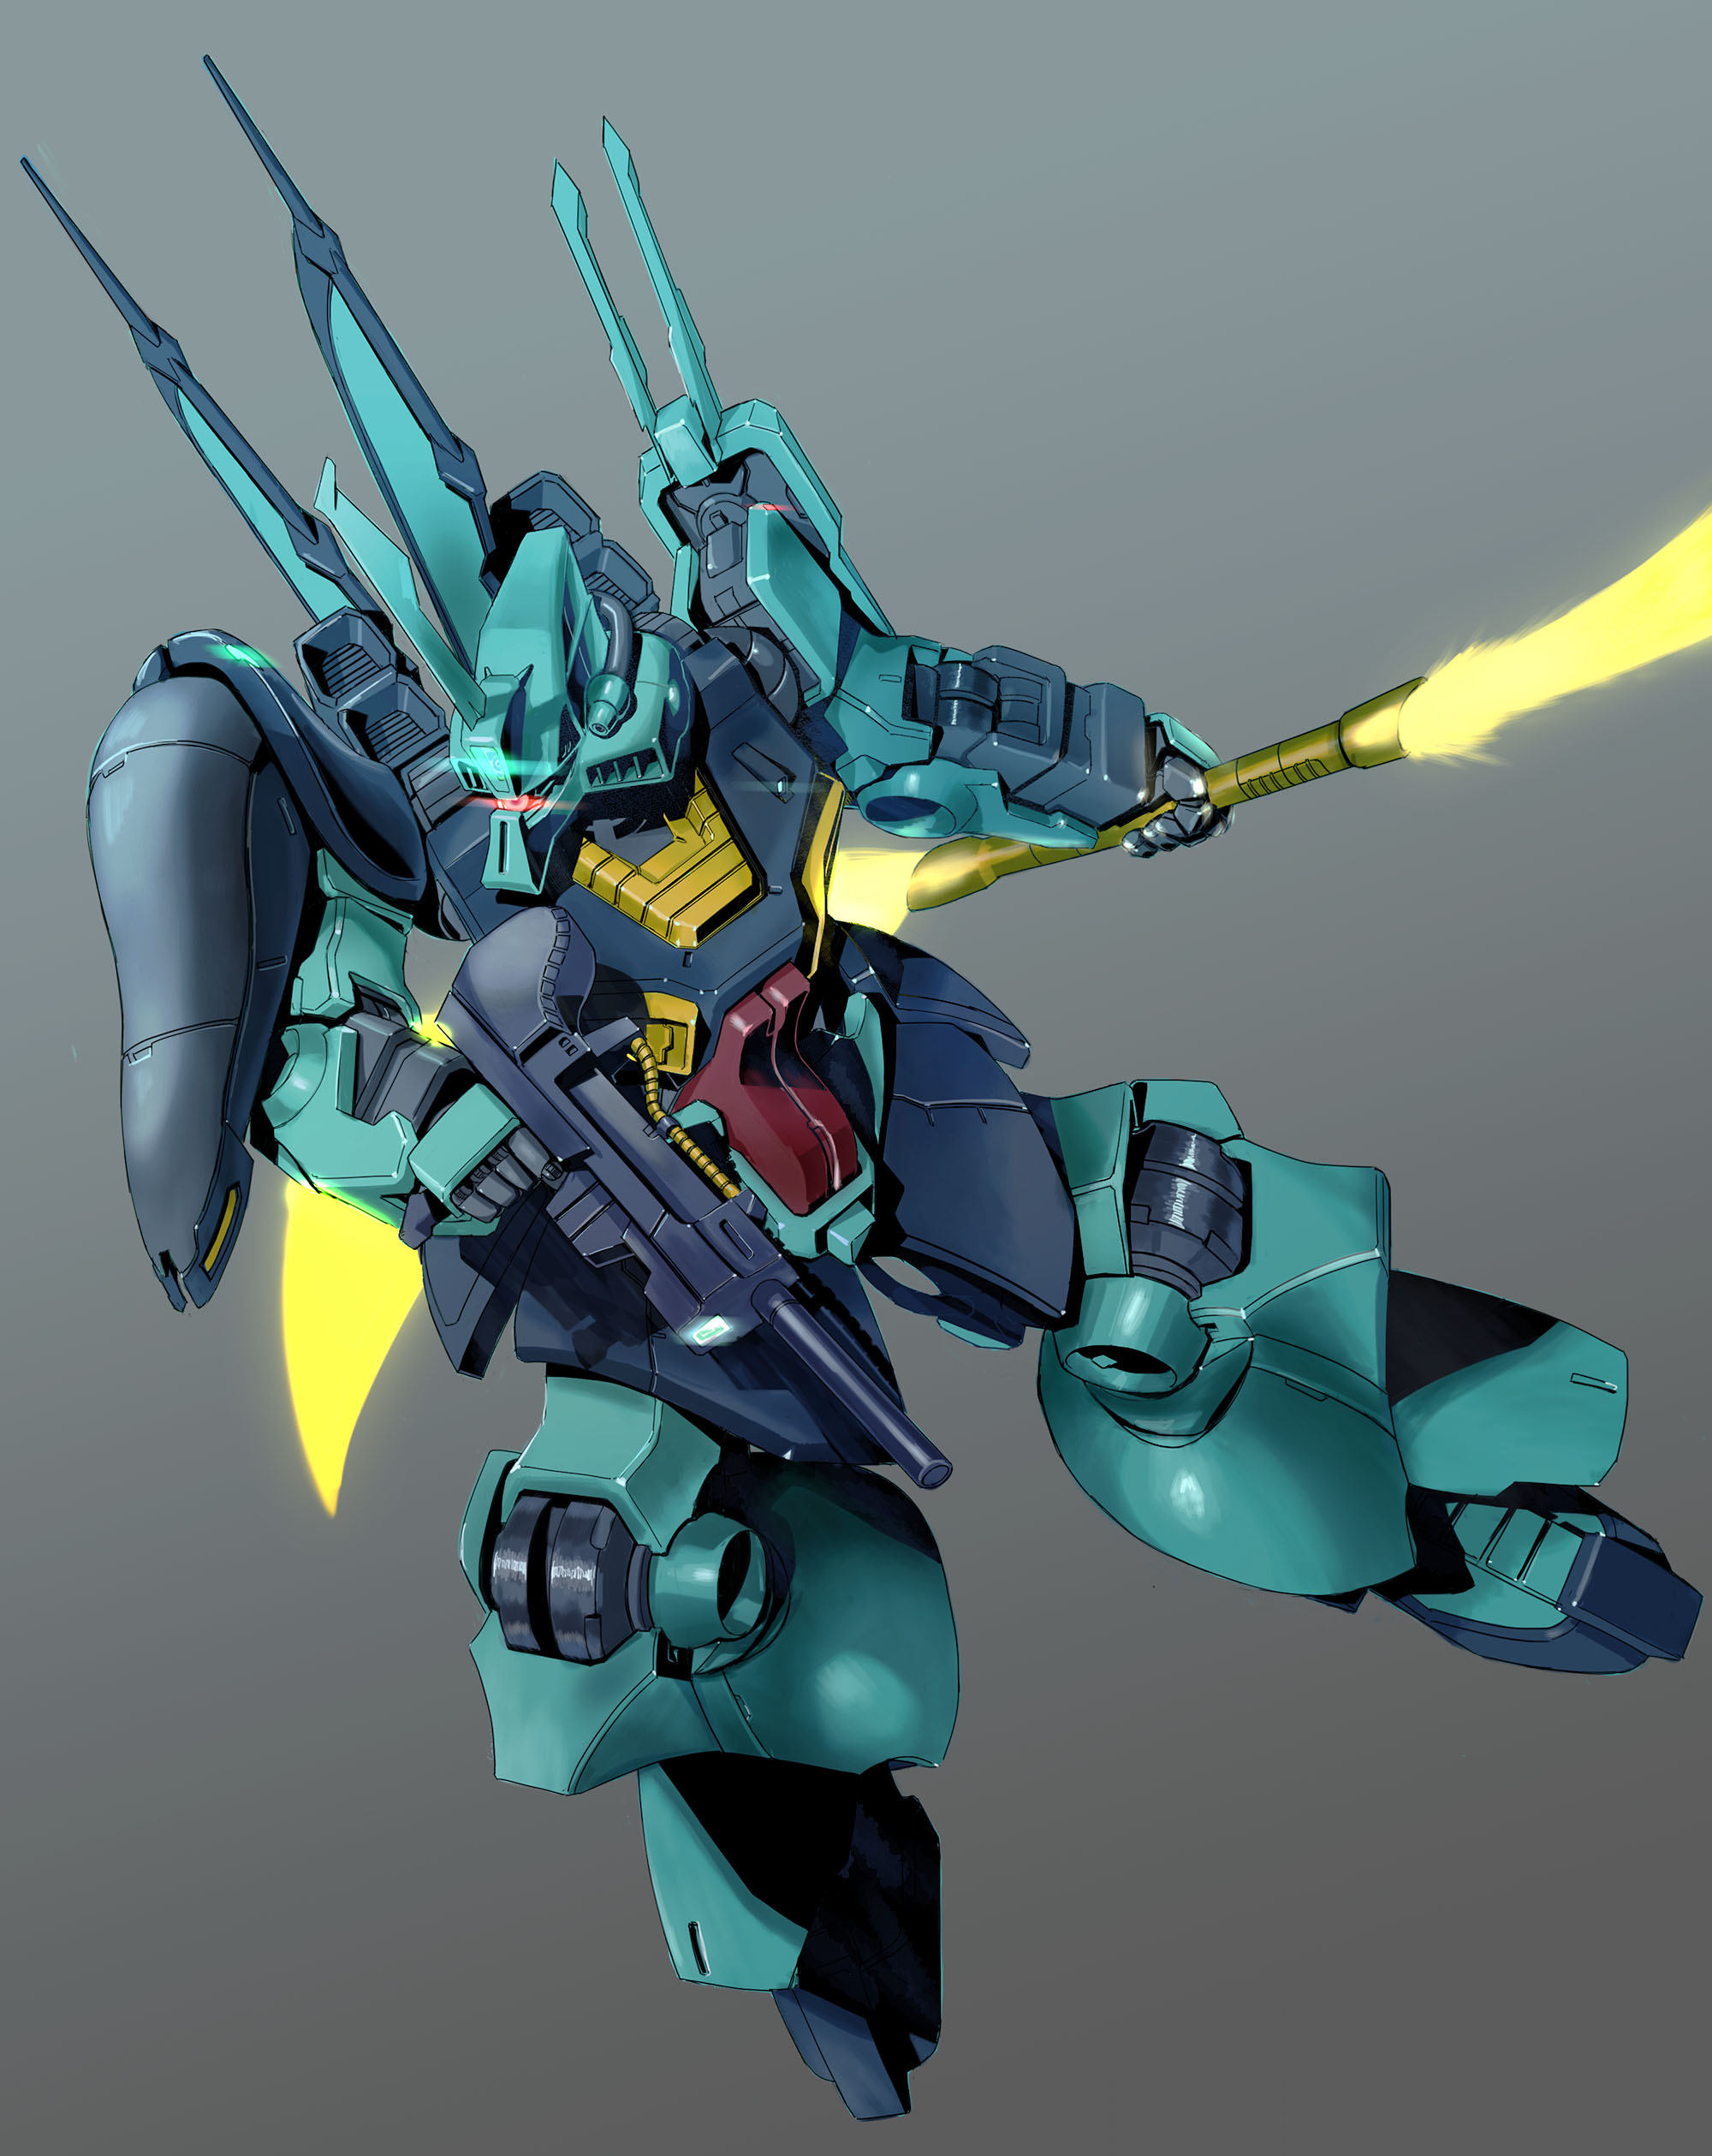 Anime 2000x2518 Dijeh Mobile Suit Mobile Suit Zeta Gundam anime mechs Super Robot Taisen artwork digital art fan art